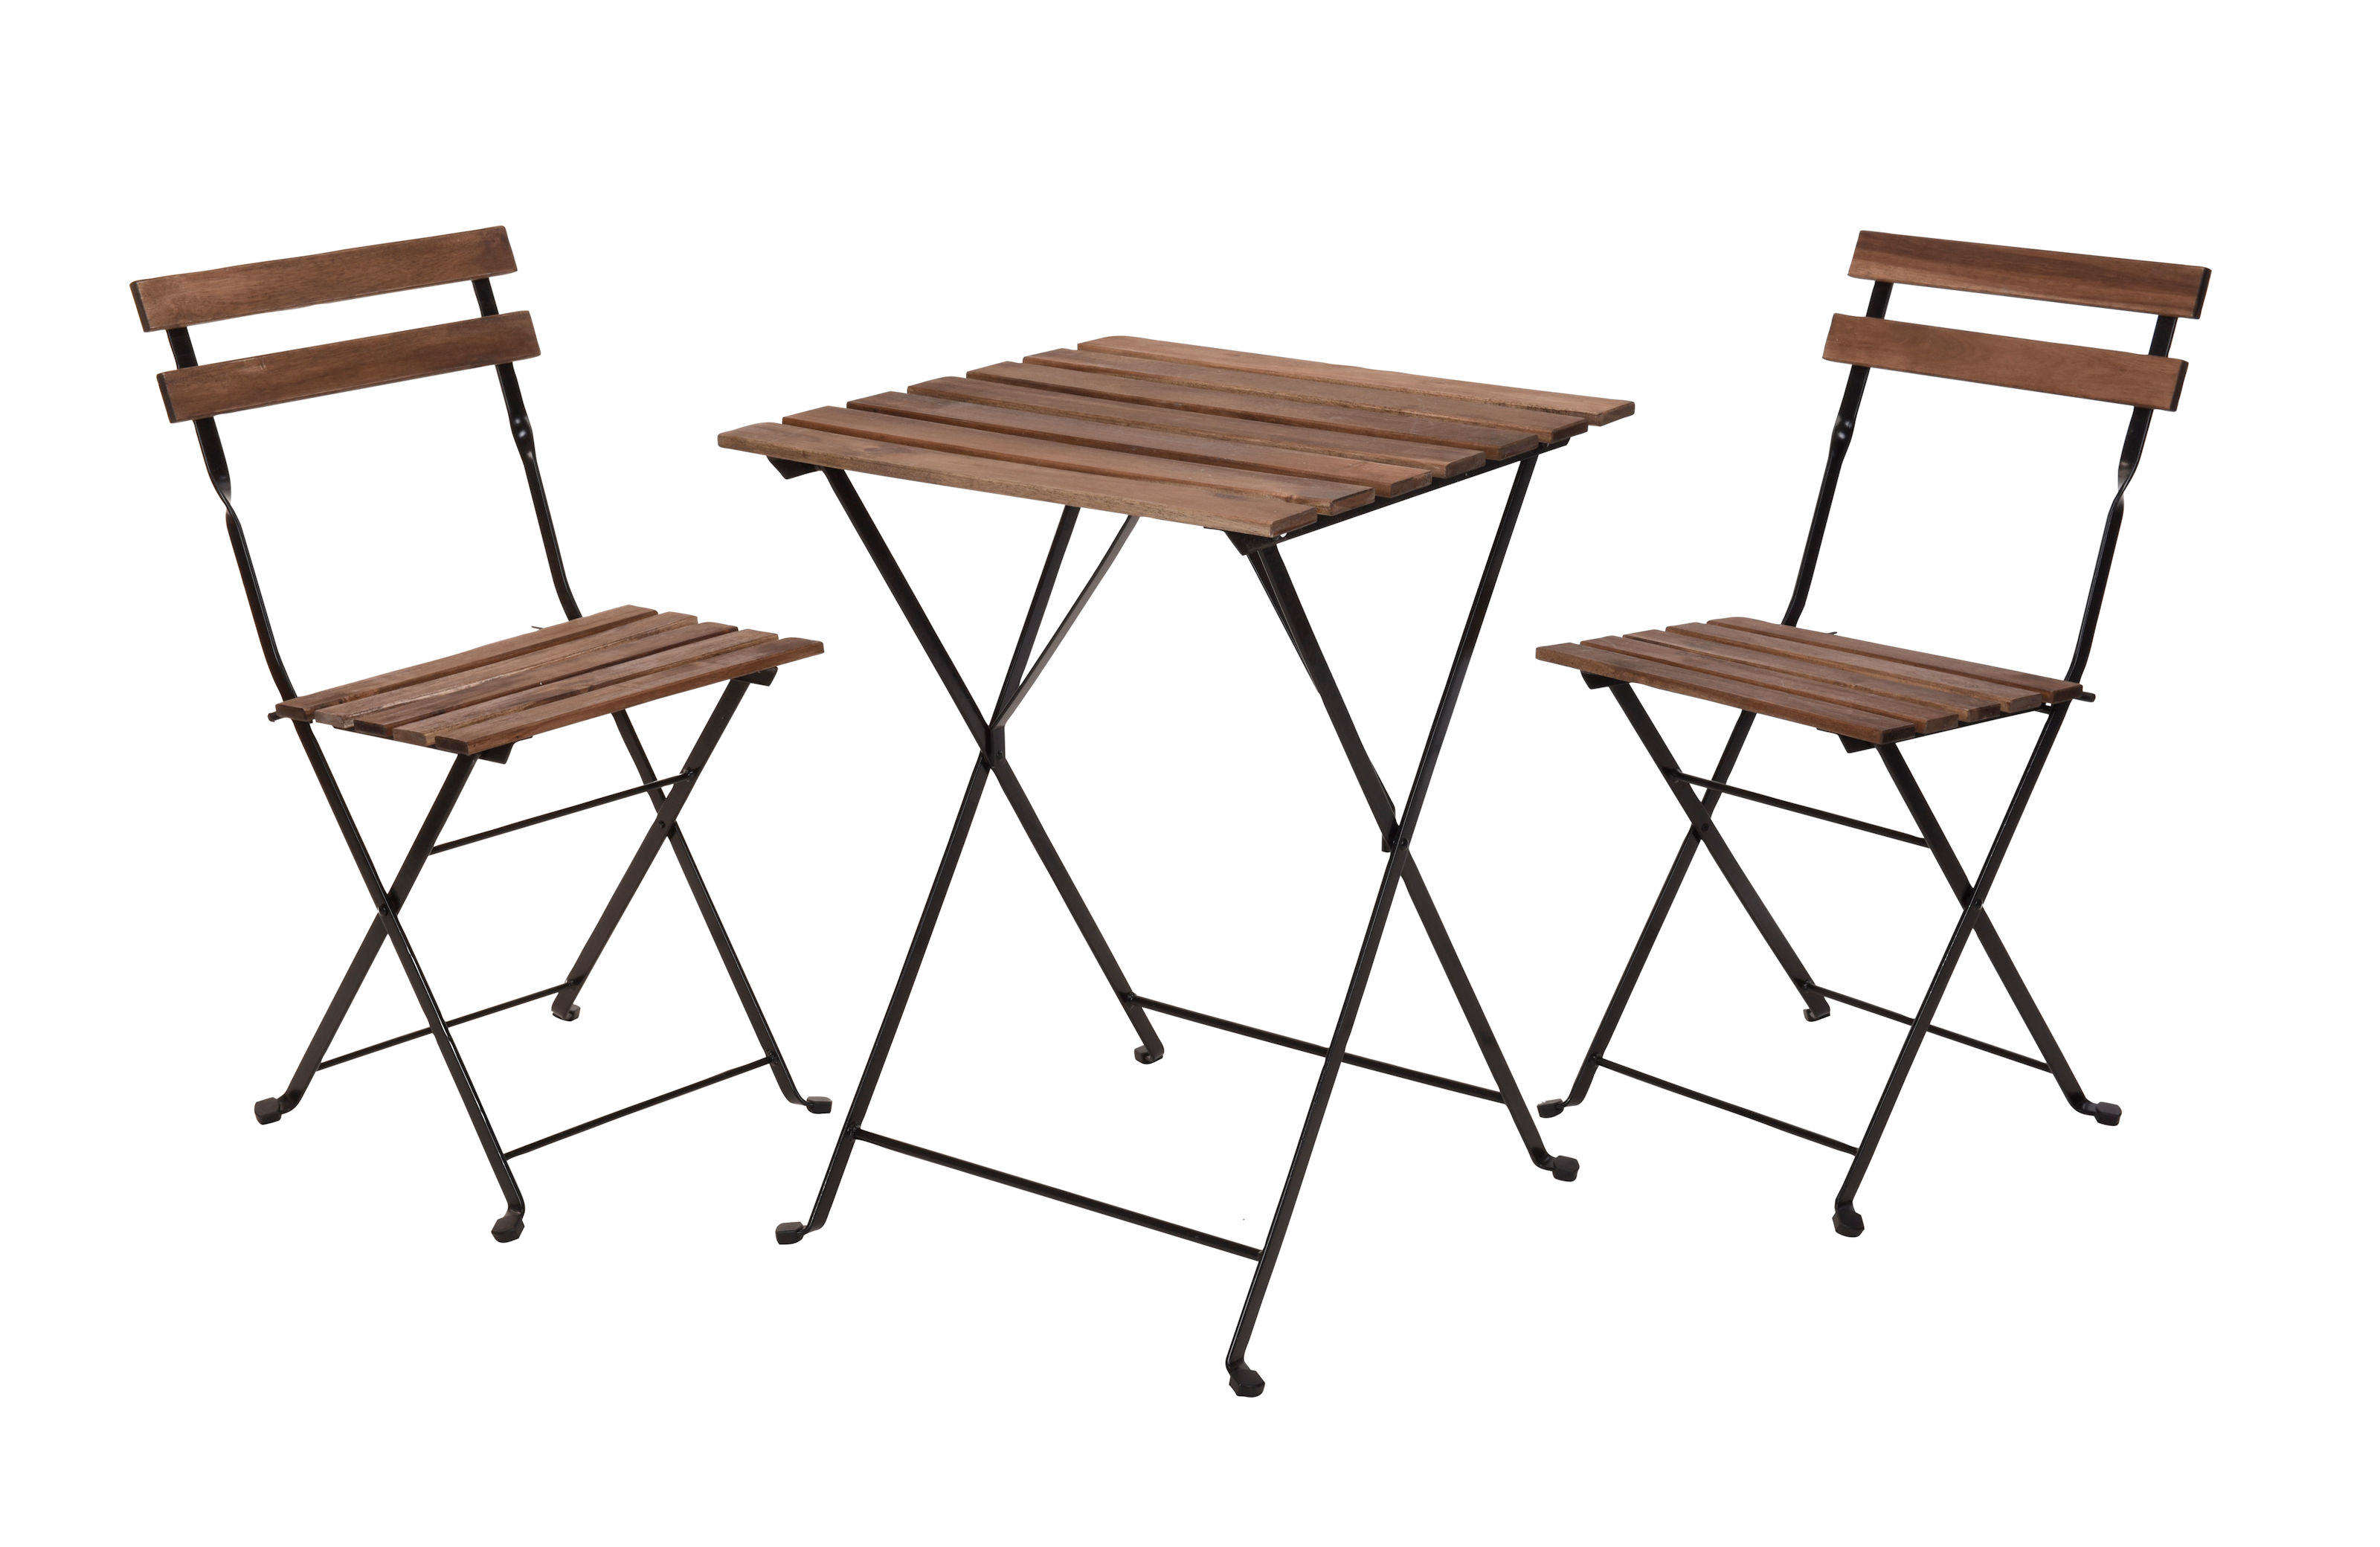 Holz Bistroset - 2 Metall Stühle und Bistrotisch - Sitzgruppe Balkon Möbel Set